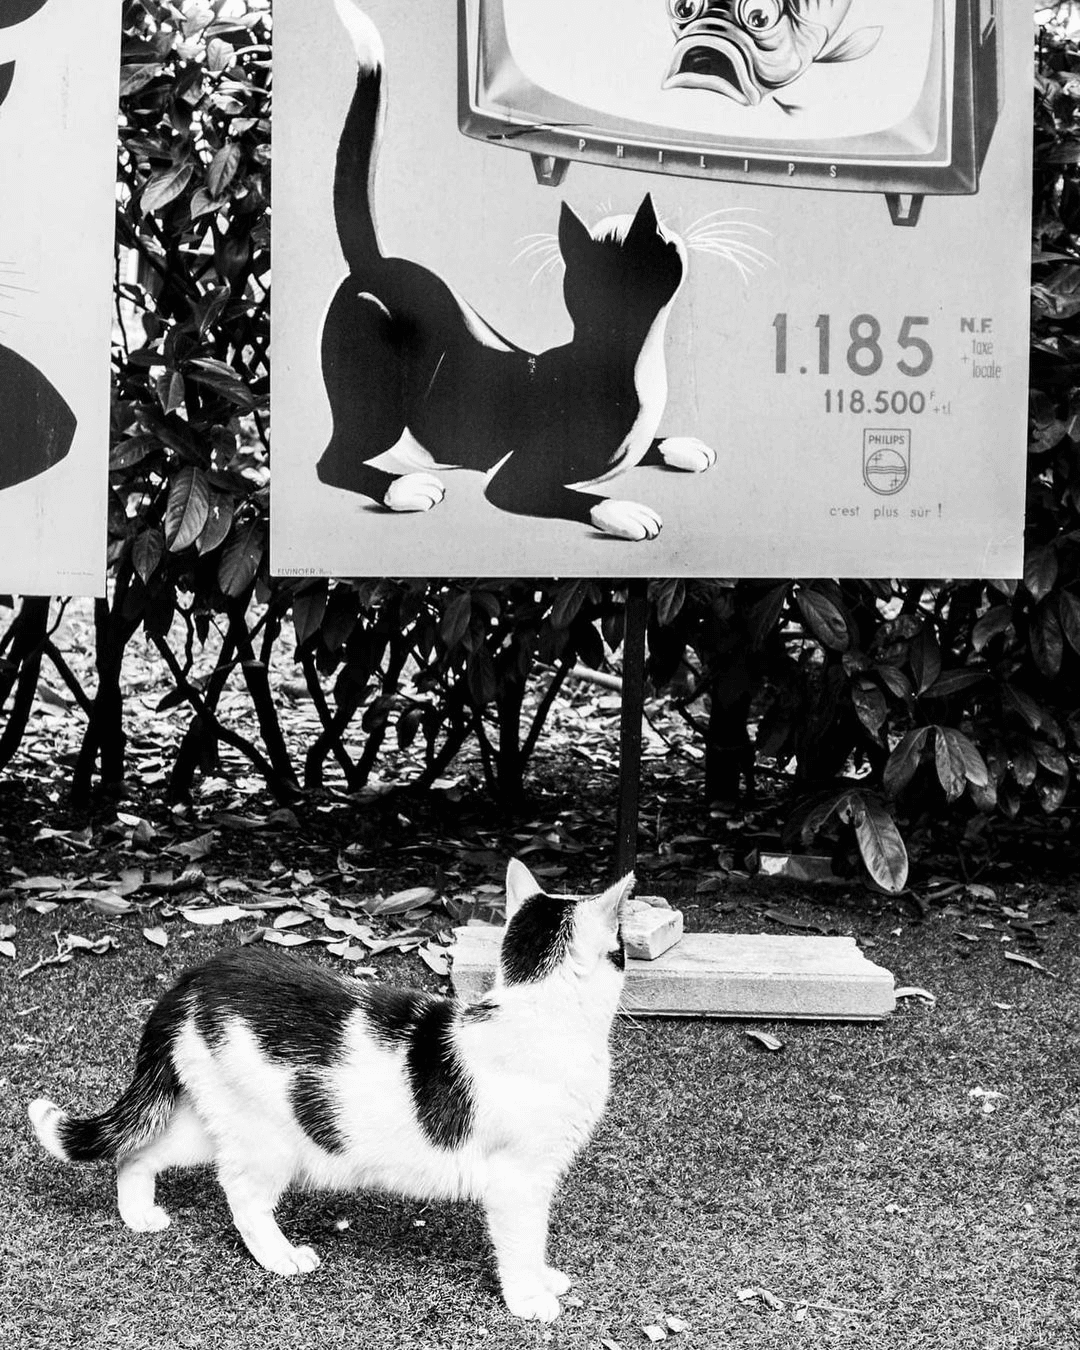 Душевный проект про венецианскских котиков от итальянского фотографа